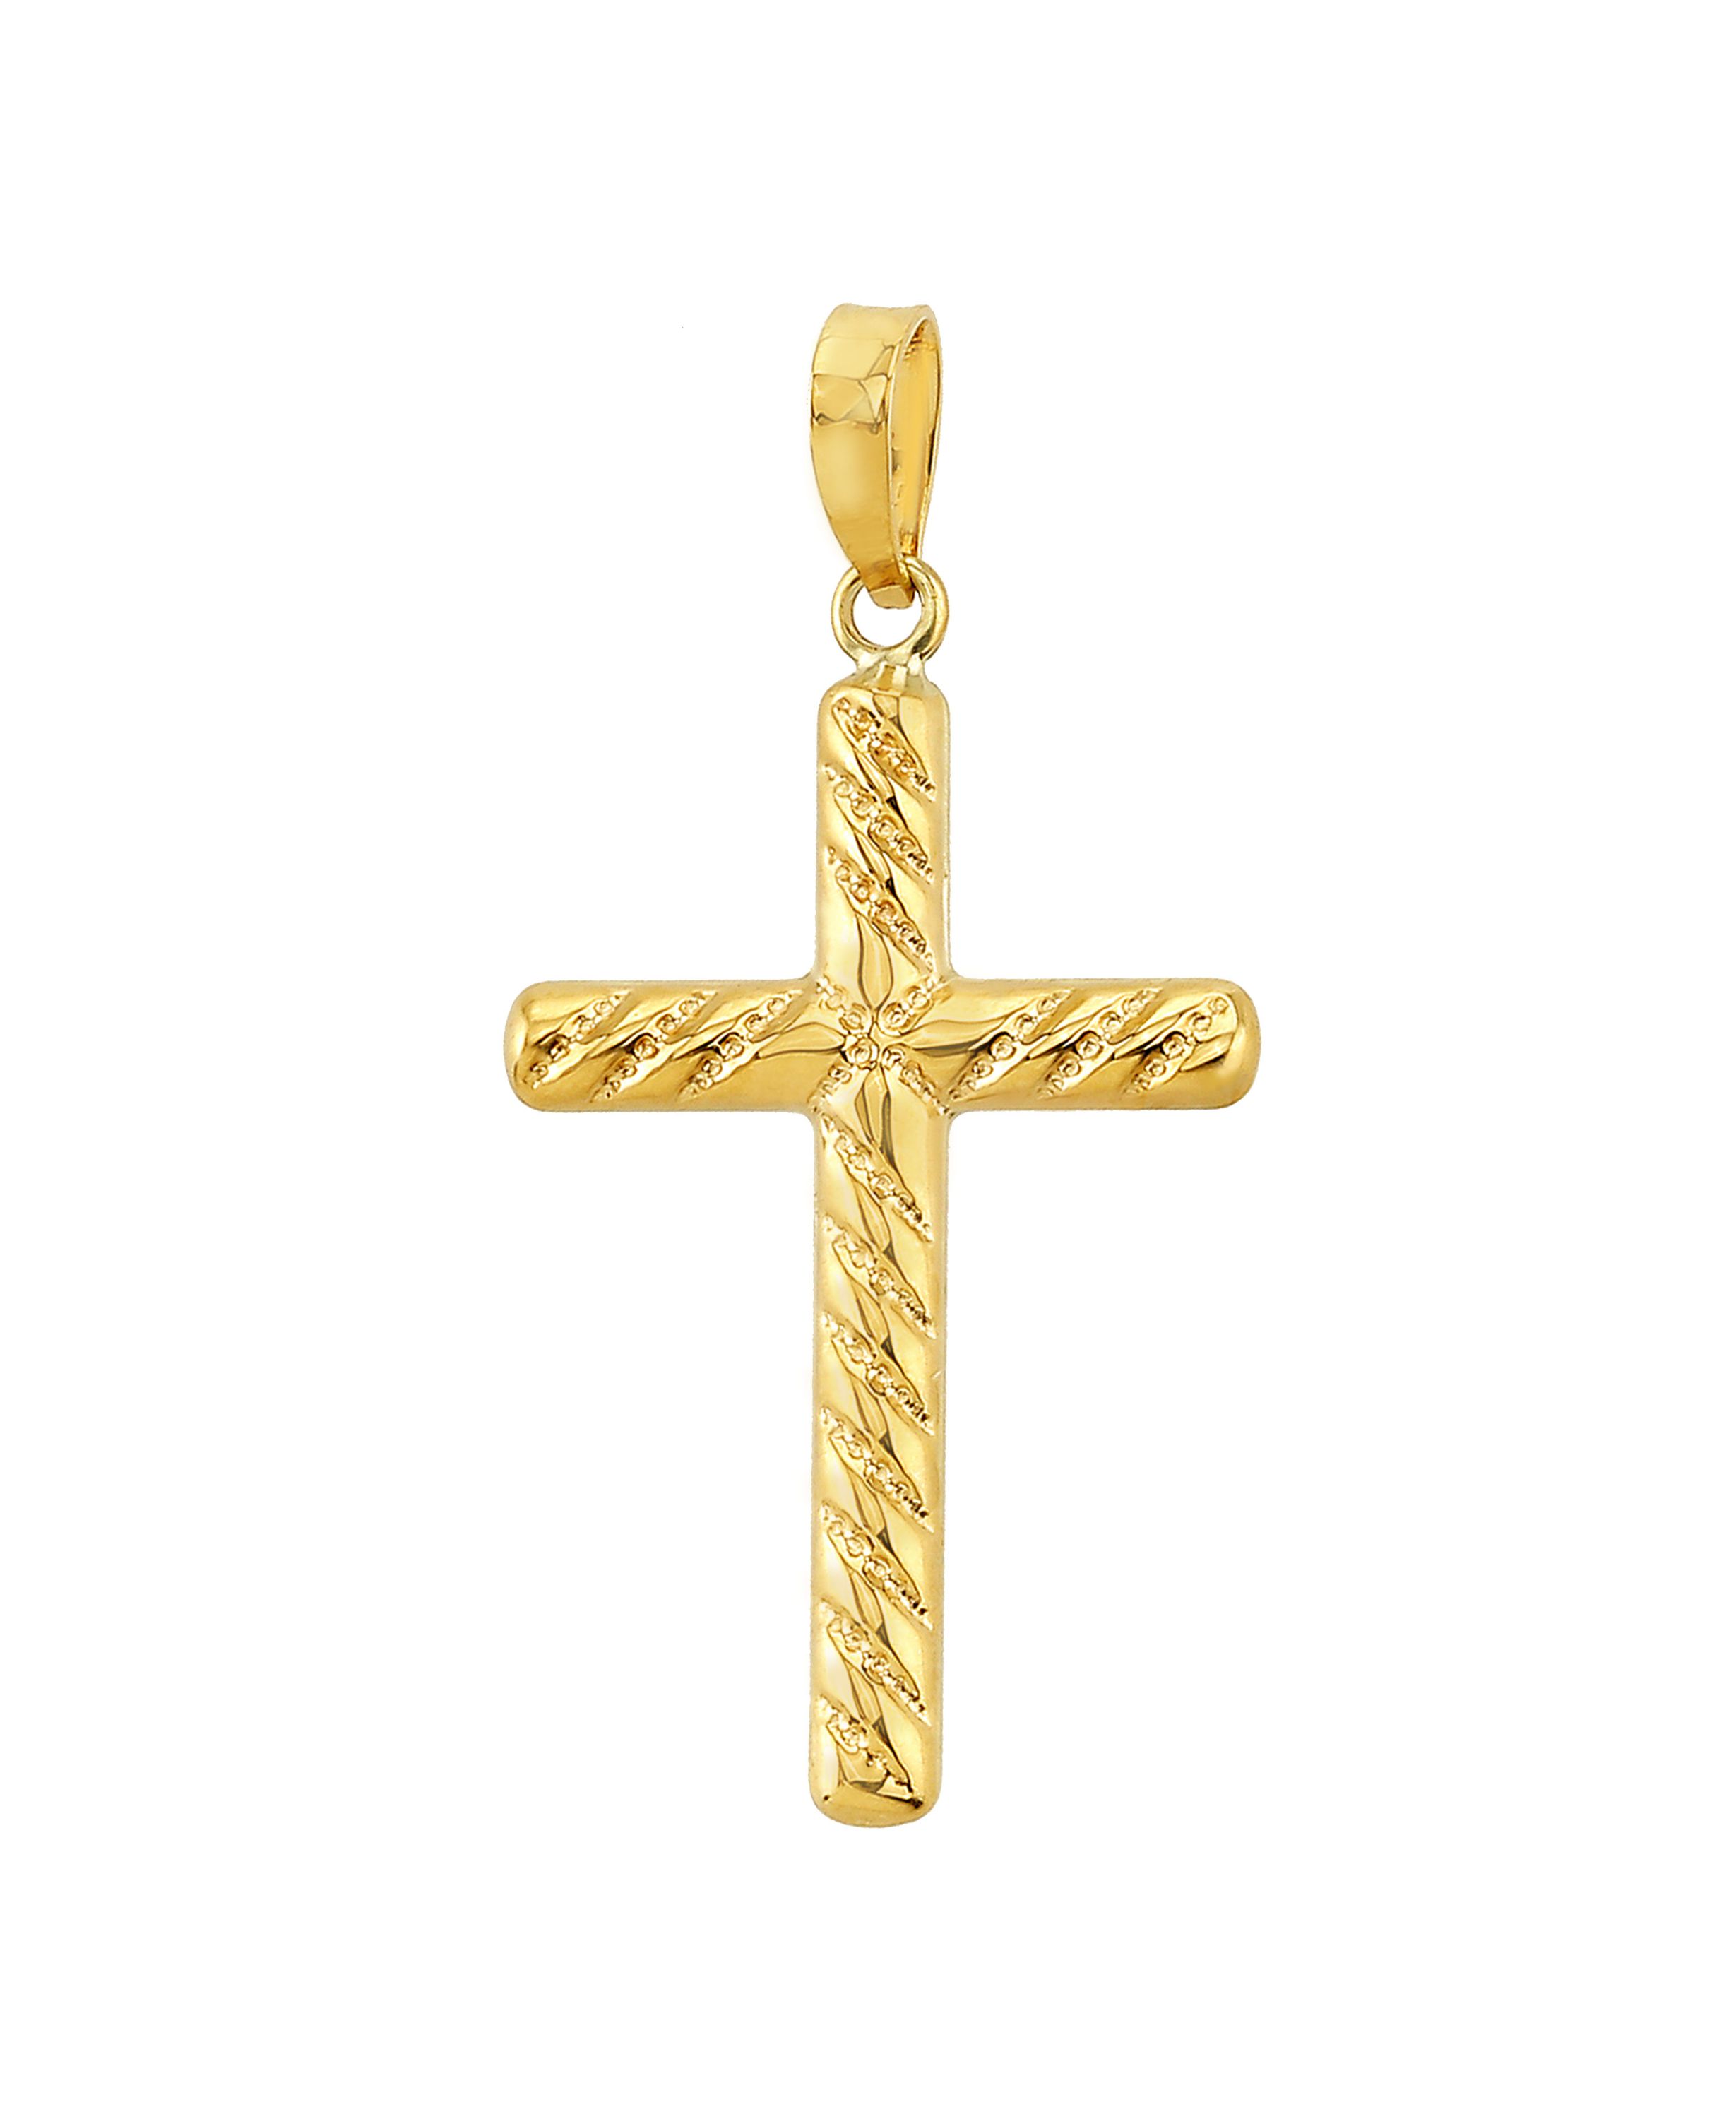 Goldanhänger Kreuz in 375 Gelbgold 8136